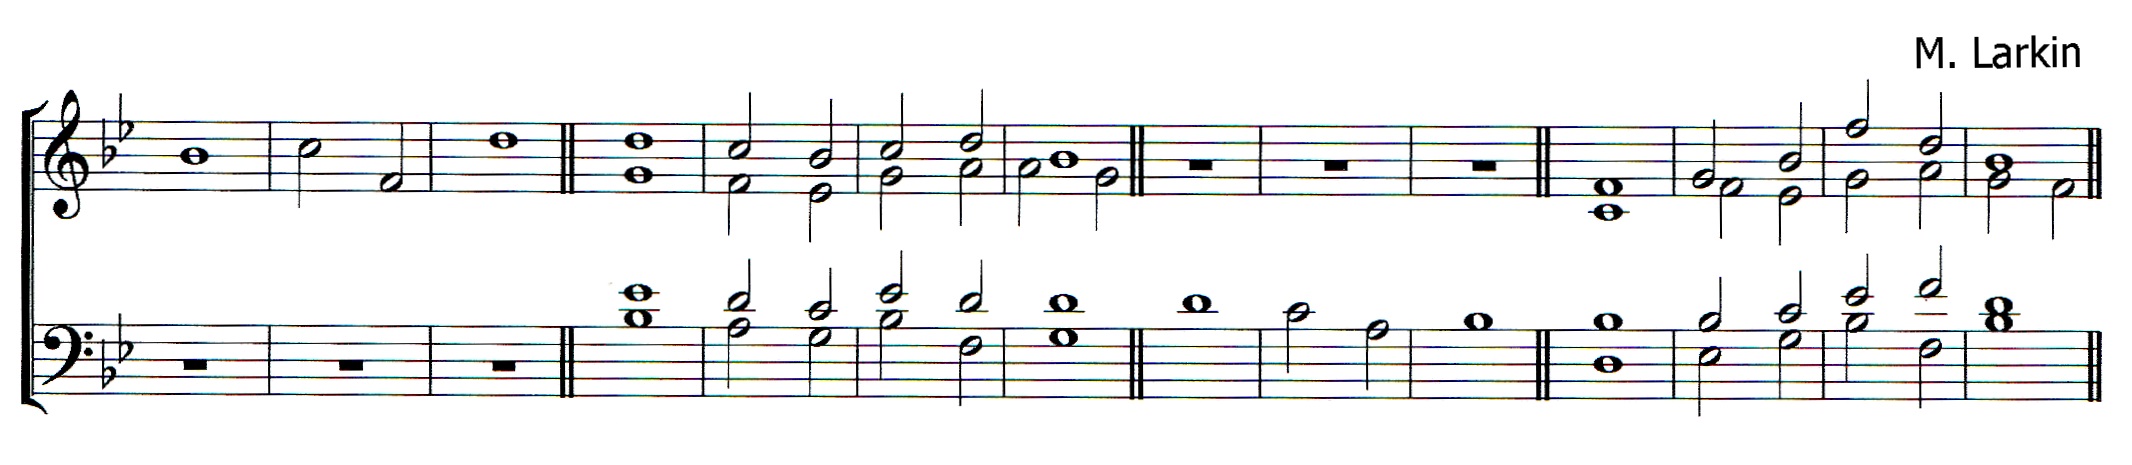 Double chant in B flat major by Matthew Larkin